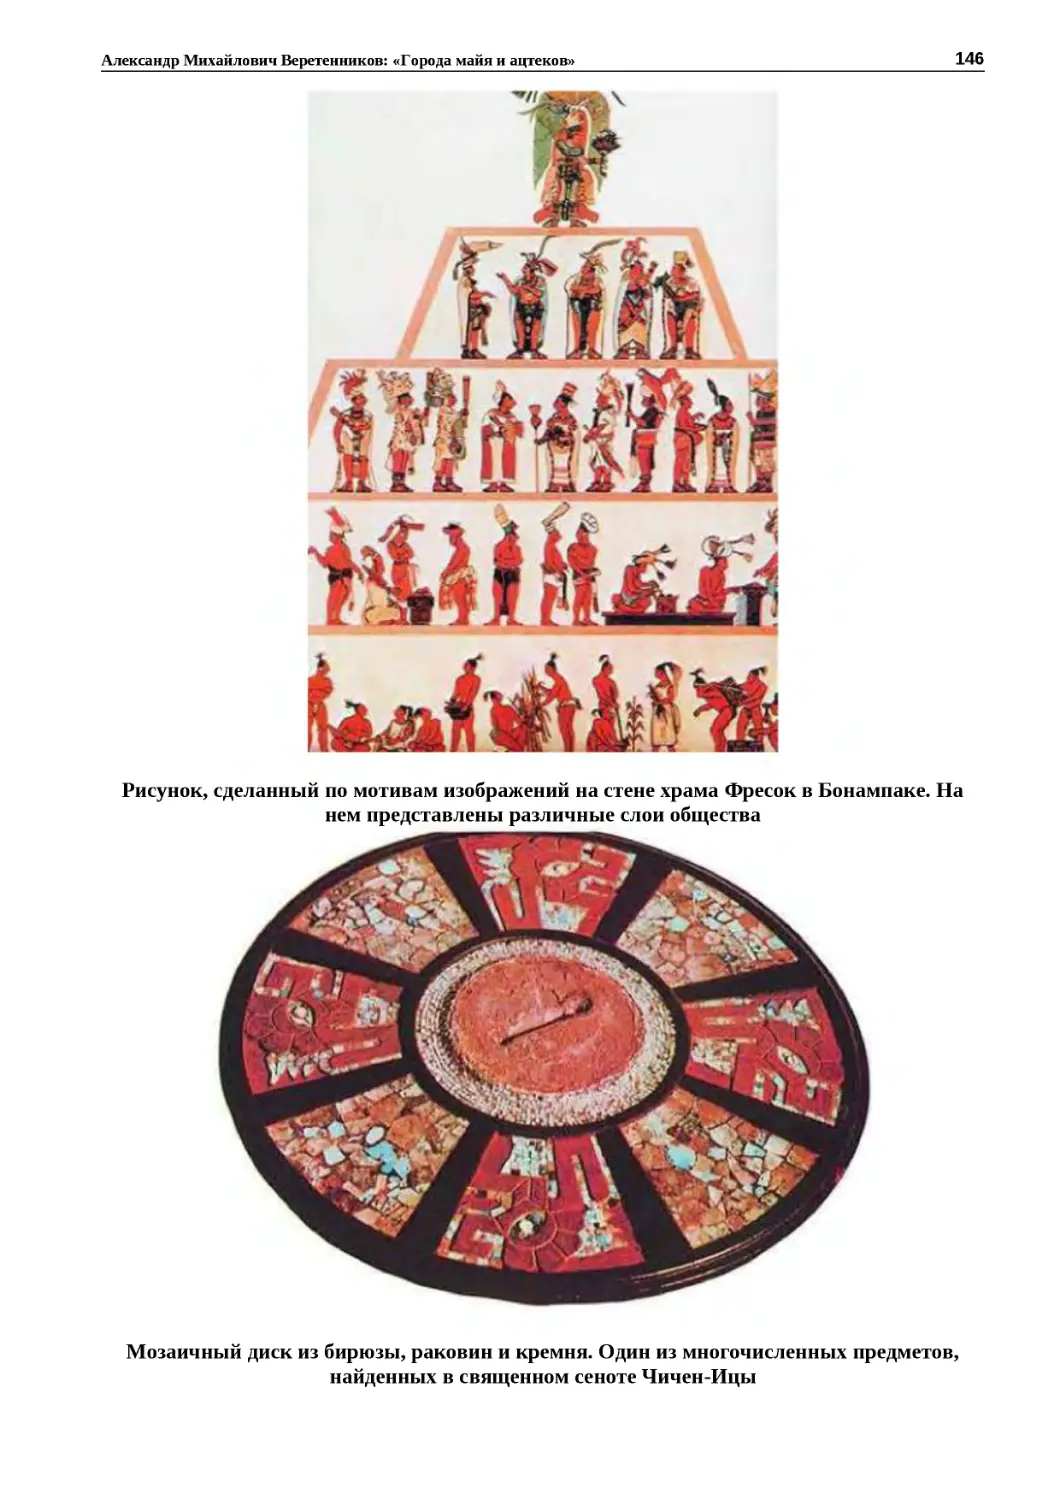 "
﻿Рисунок, сделанный по мотивам изображений на стене храма Фресок в Бонампаке. На нем представлены различные слои обществ
"
﻿Мозаичный диск из бирюзы, раковин и кремня. Один из многочисленных предметов, найденных в священном сеноте Чичен‑Иц